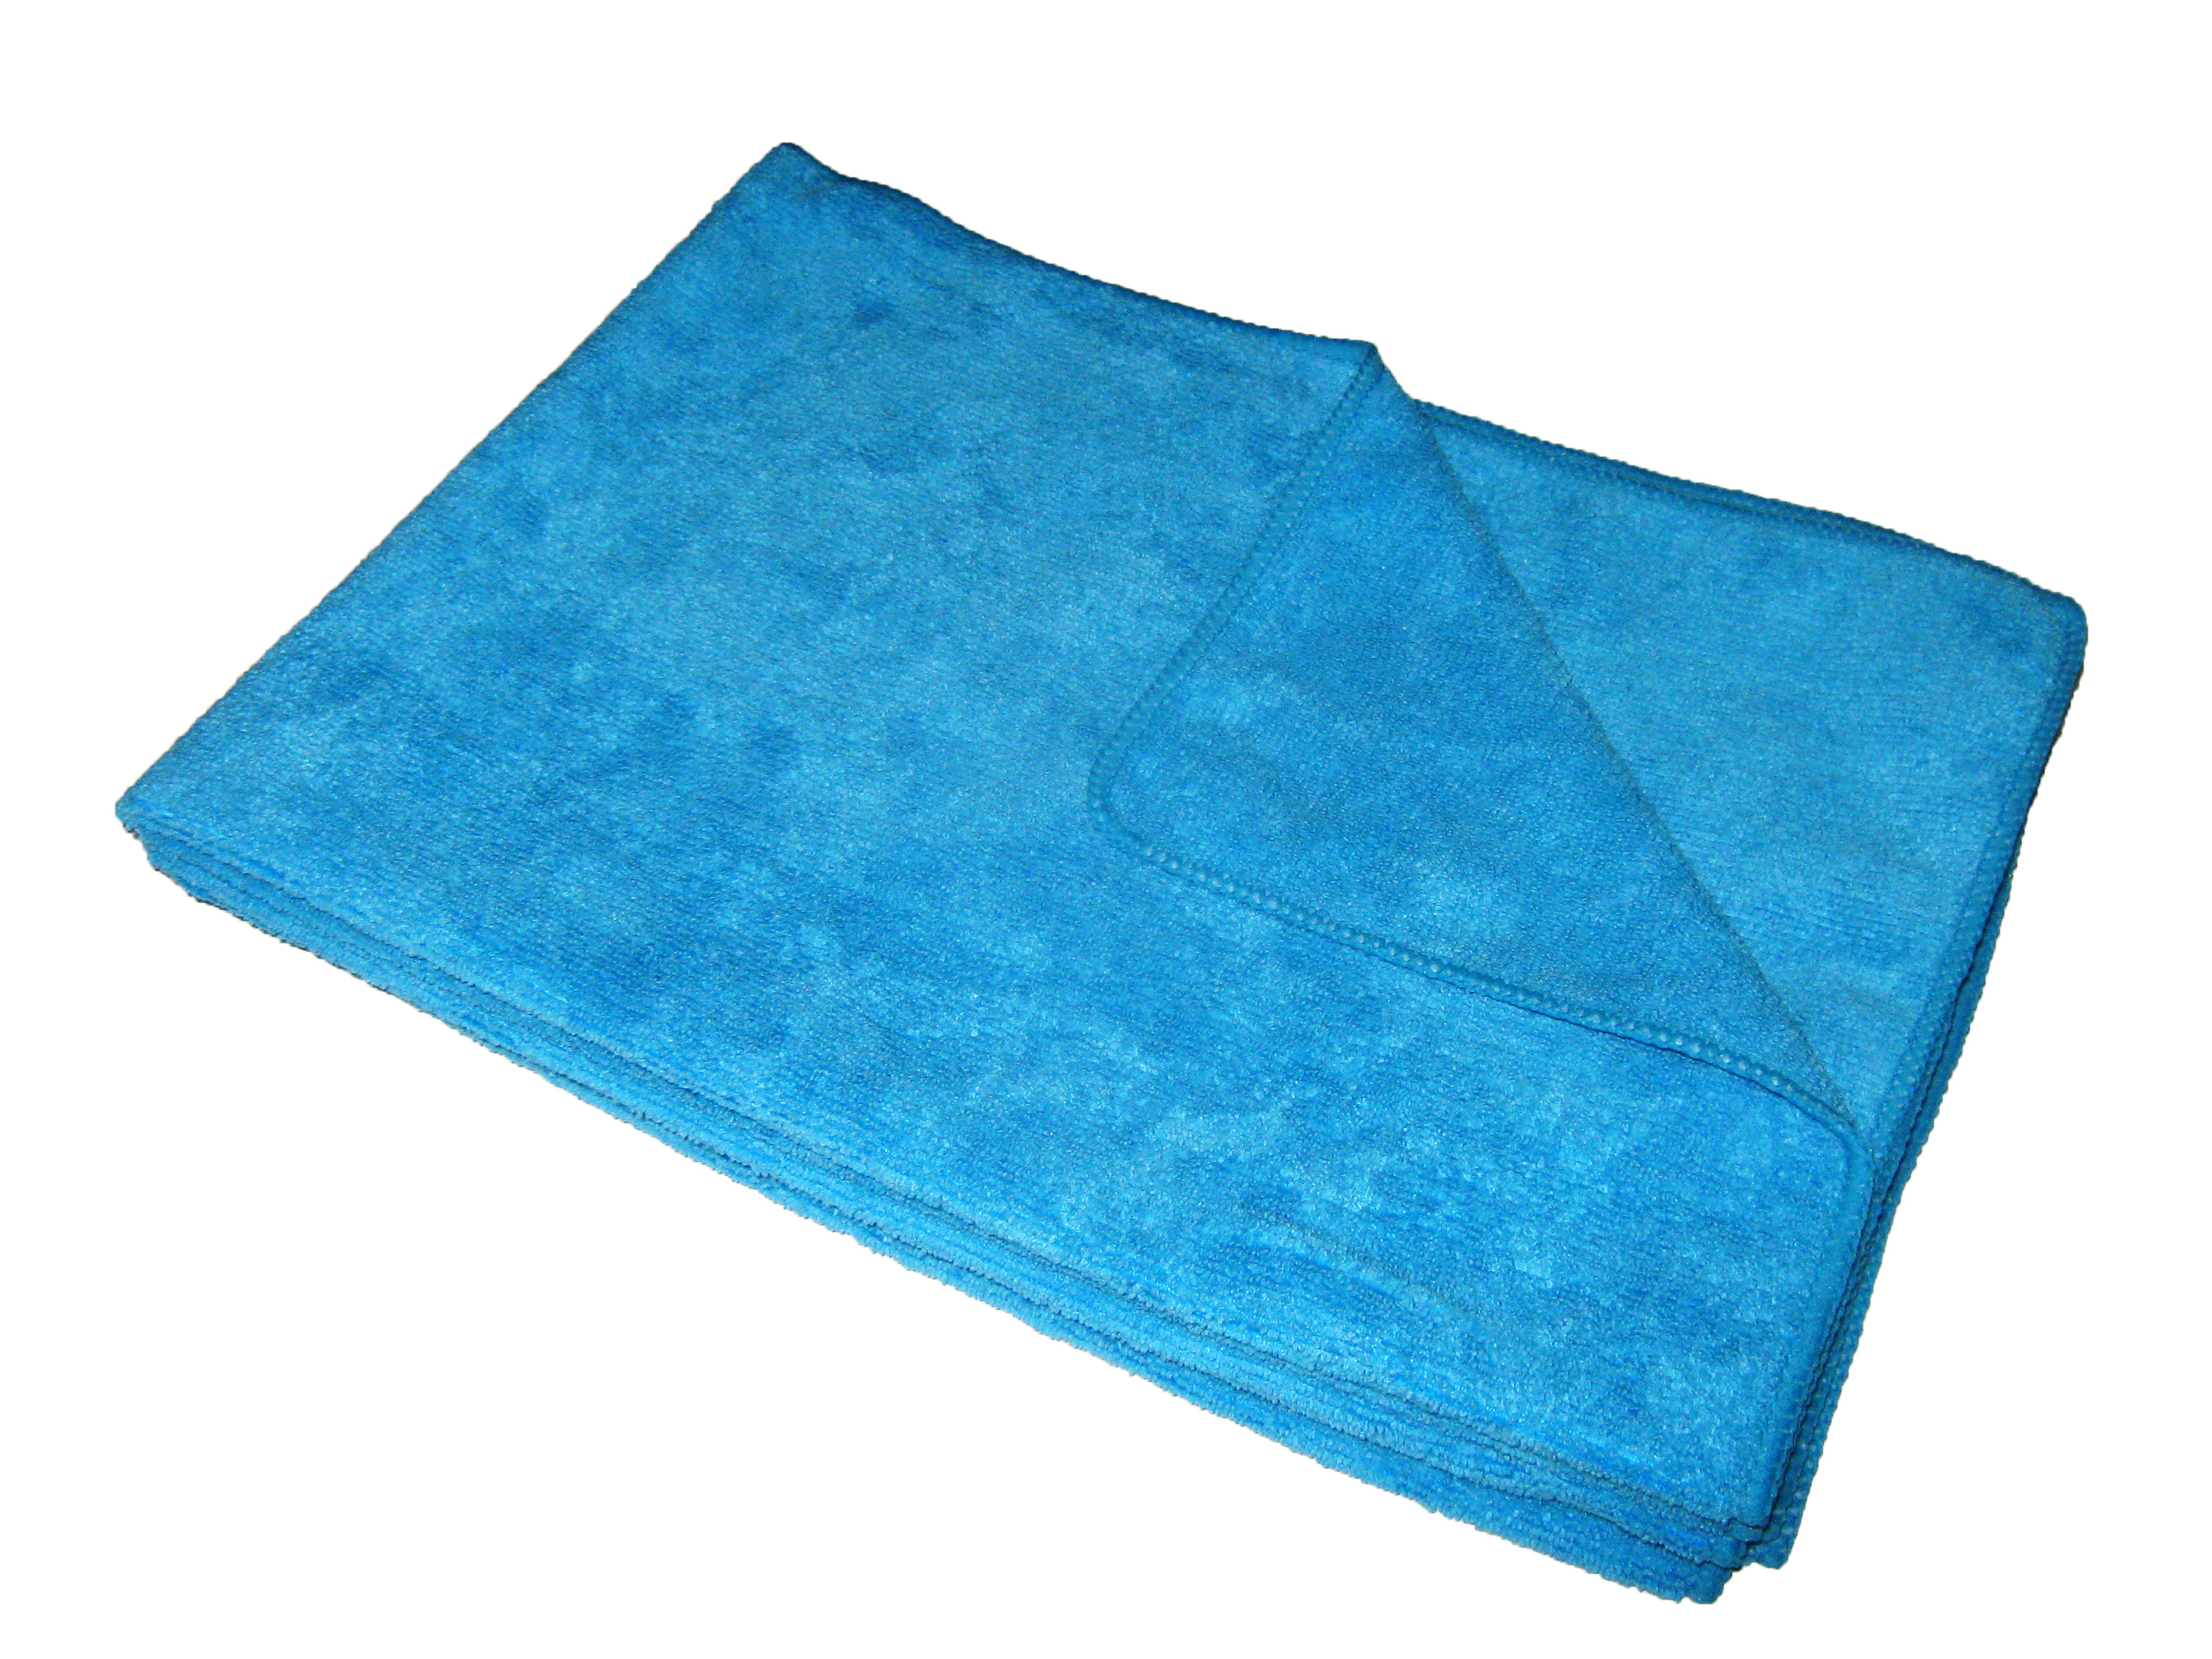 24 MaximMart Microfiber 300GSM Professional 16"x24" Salon Towels Dark Blue 